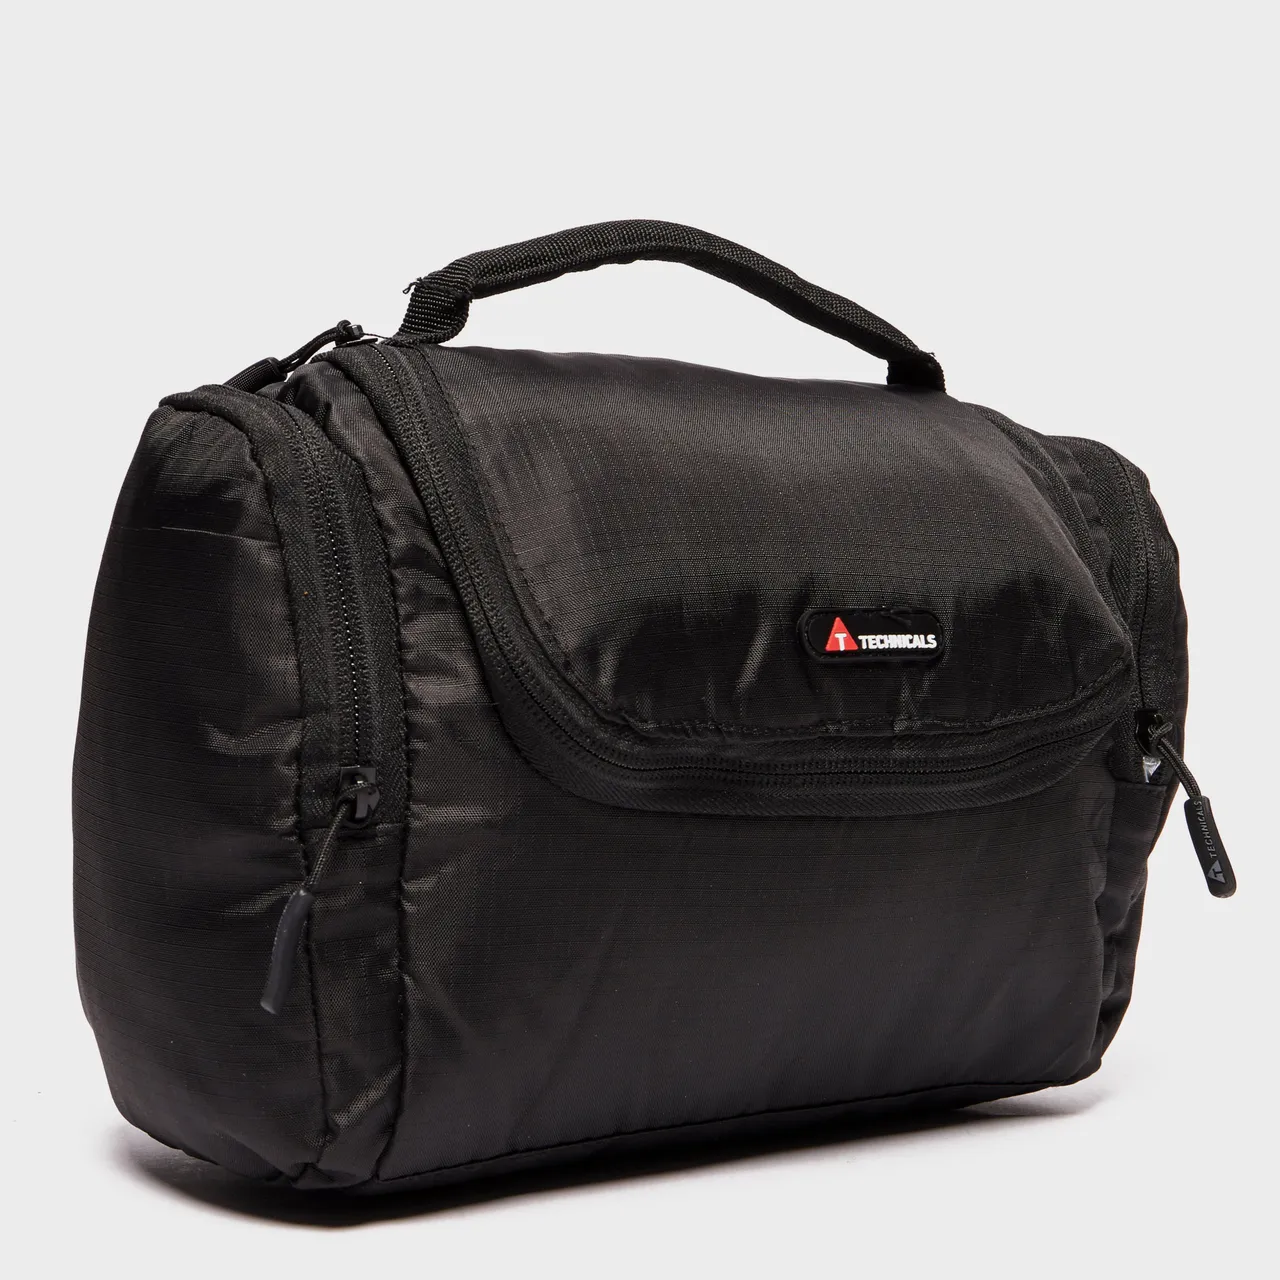 Travel Wash Bag, Black